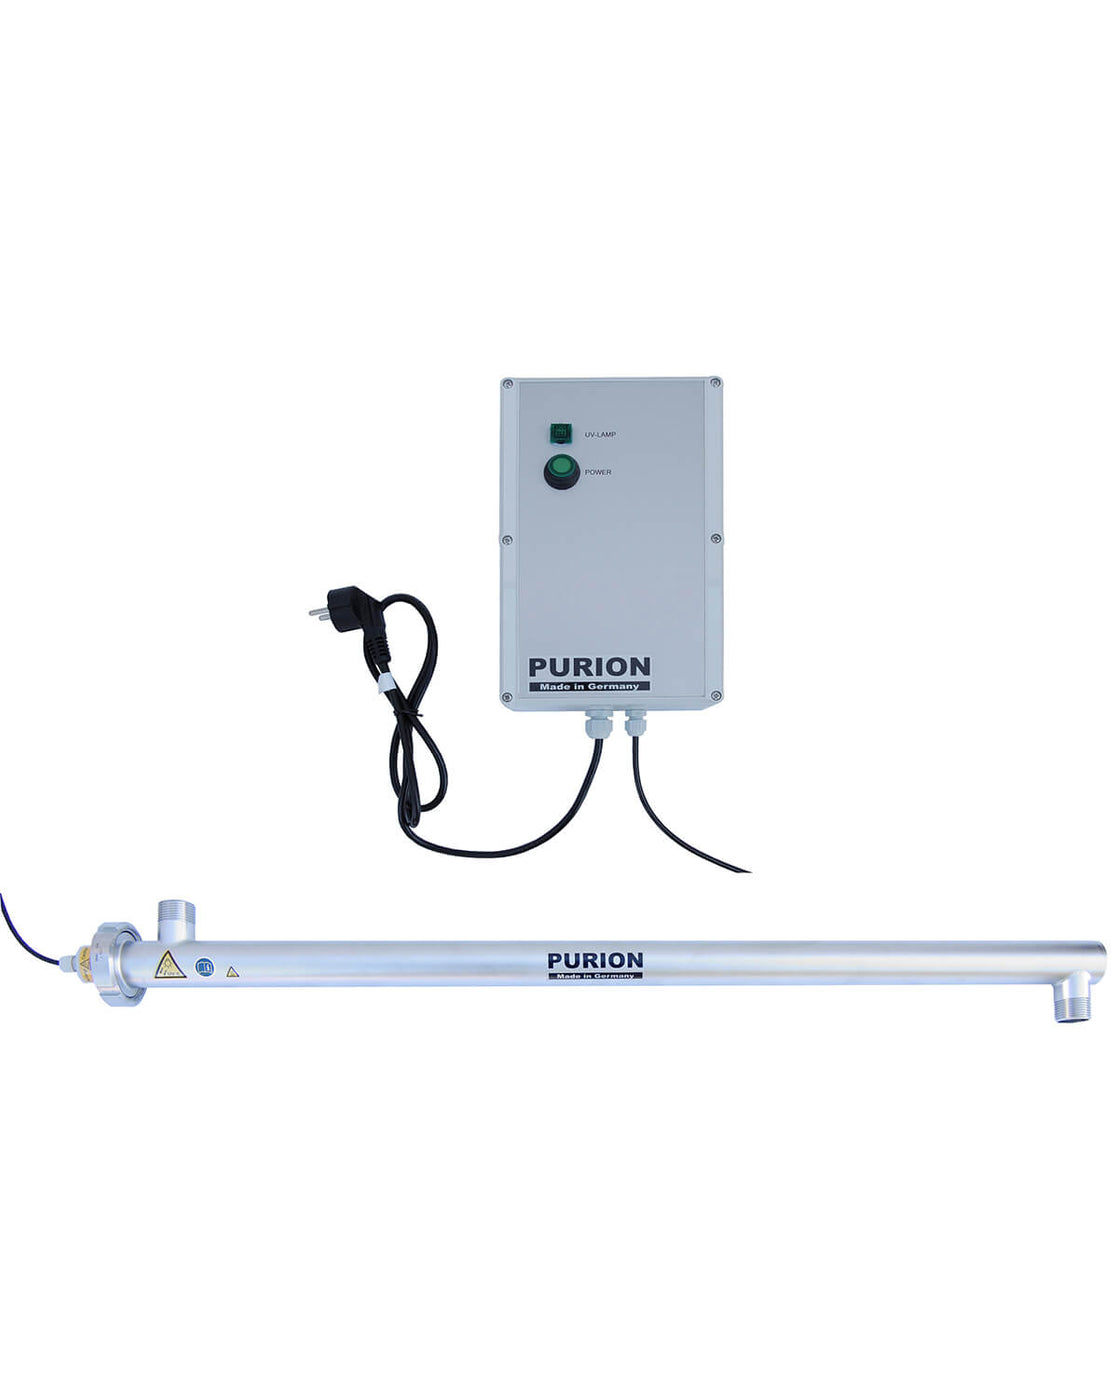 Eine PURION 2500 36 W 110 - 240 V AC Basic UV-C-Desinfektionsanlage mit angeschlossener Lampe.